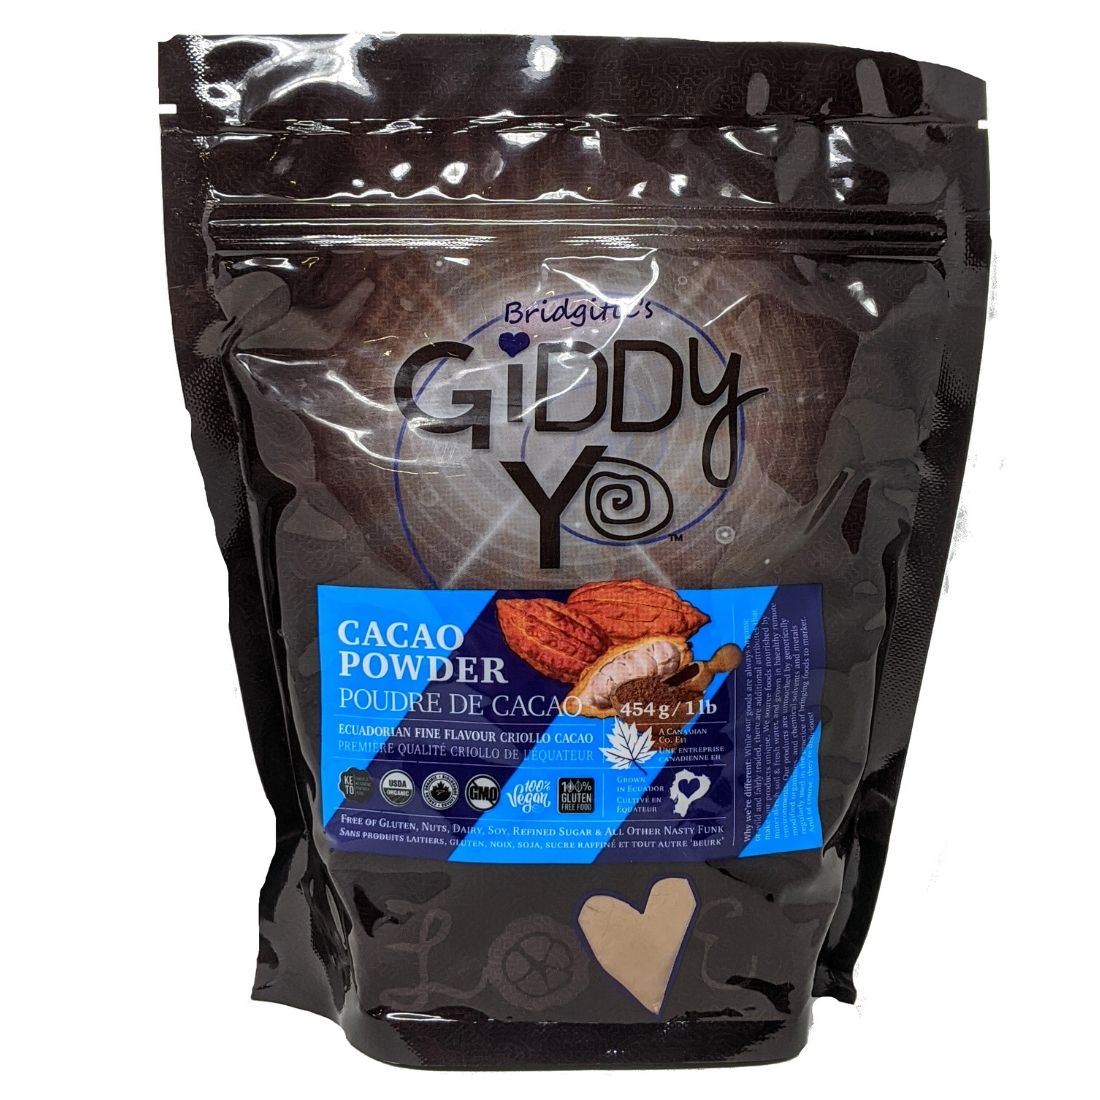 Giddy Yoyo Organic Ecuadorian Cacao Powder (Fermented, Lightly-Roasted Non-Hybrid Cacao), 454g